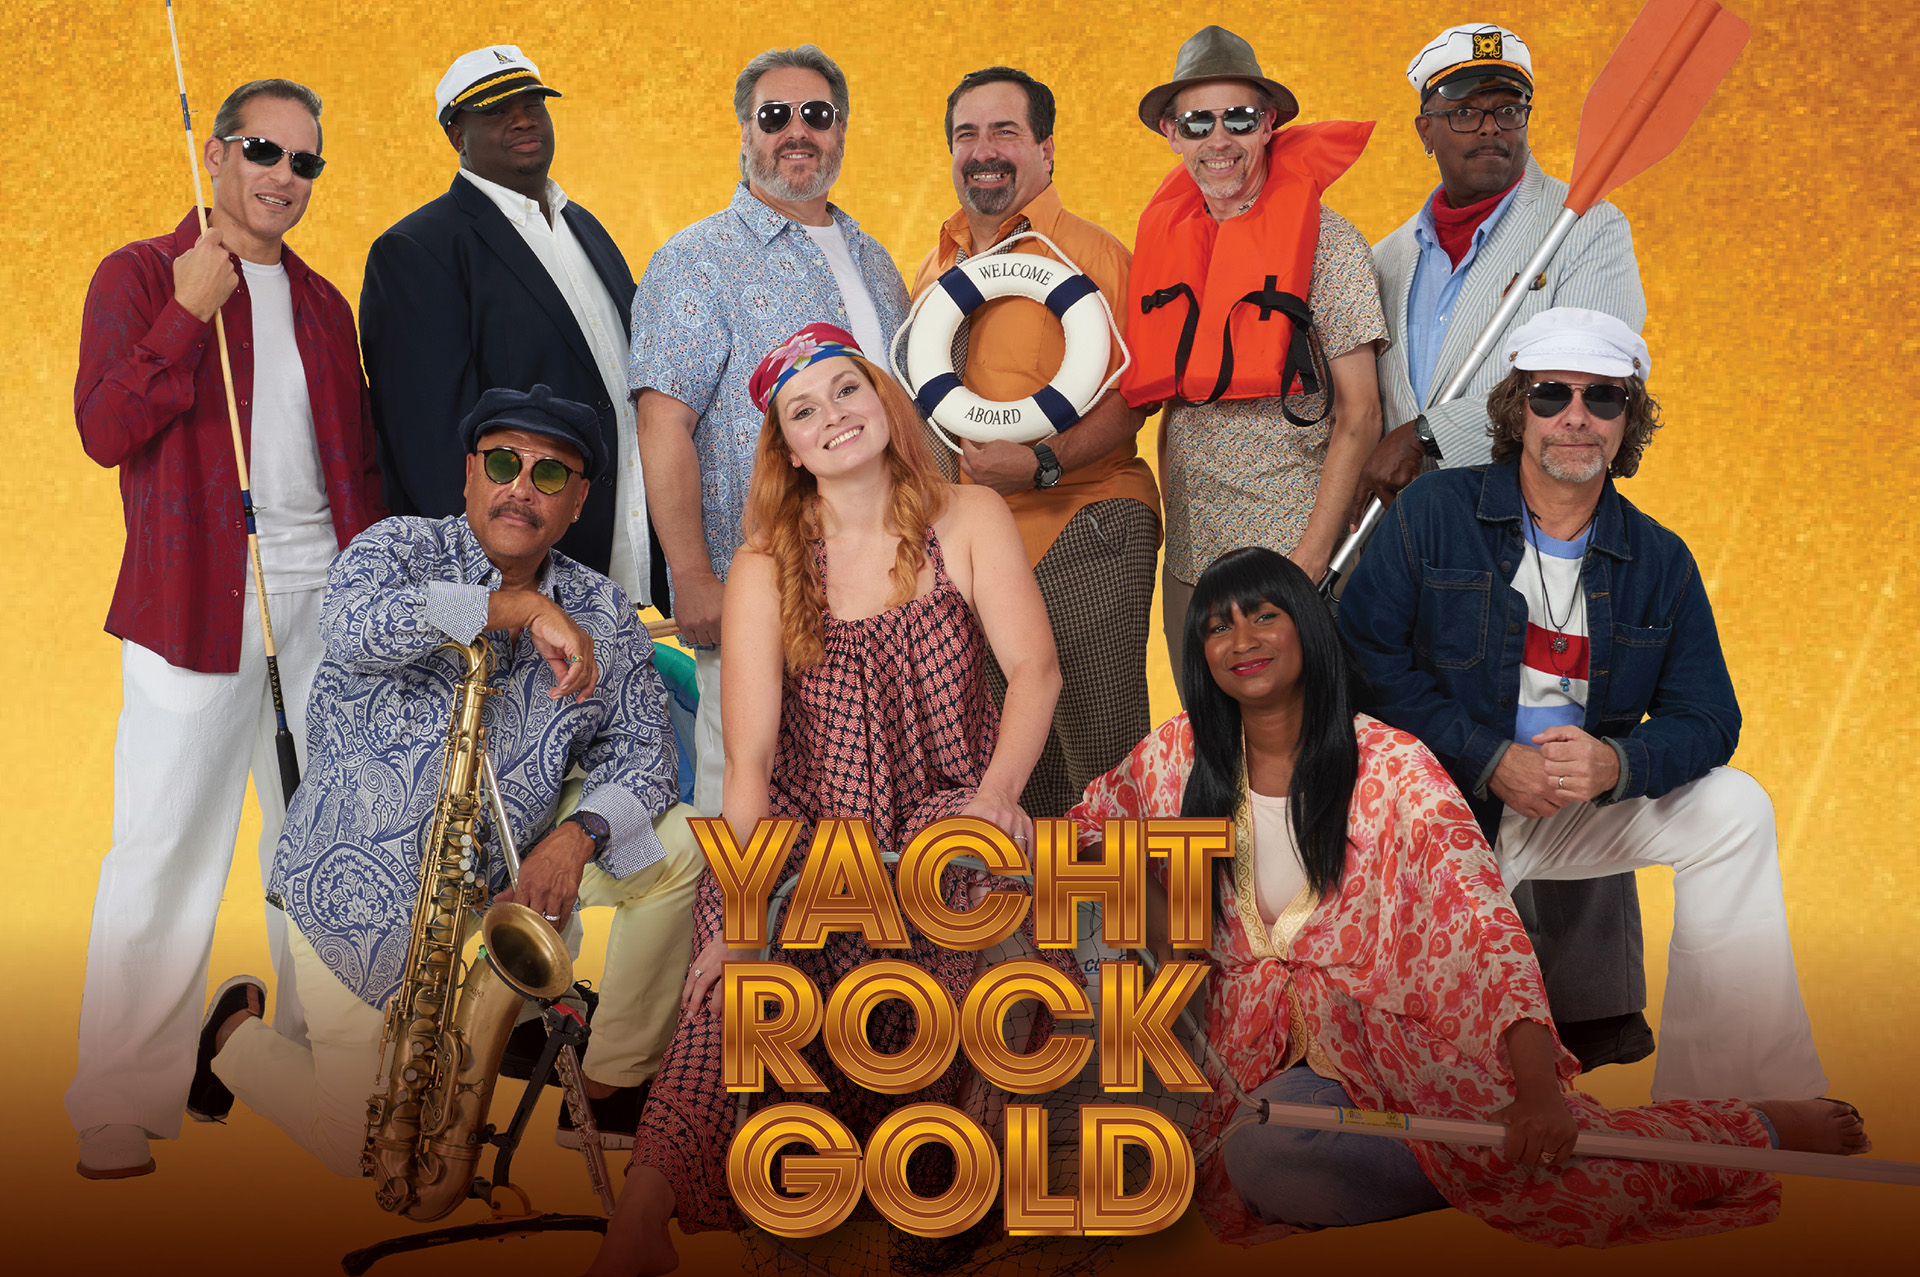 yachtrockgold-homepage-01